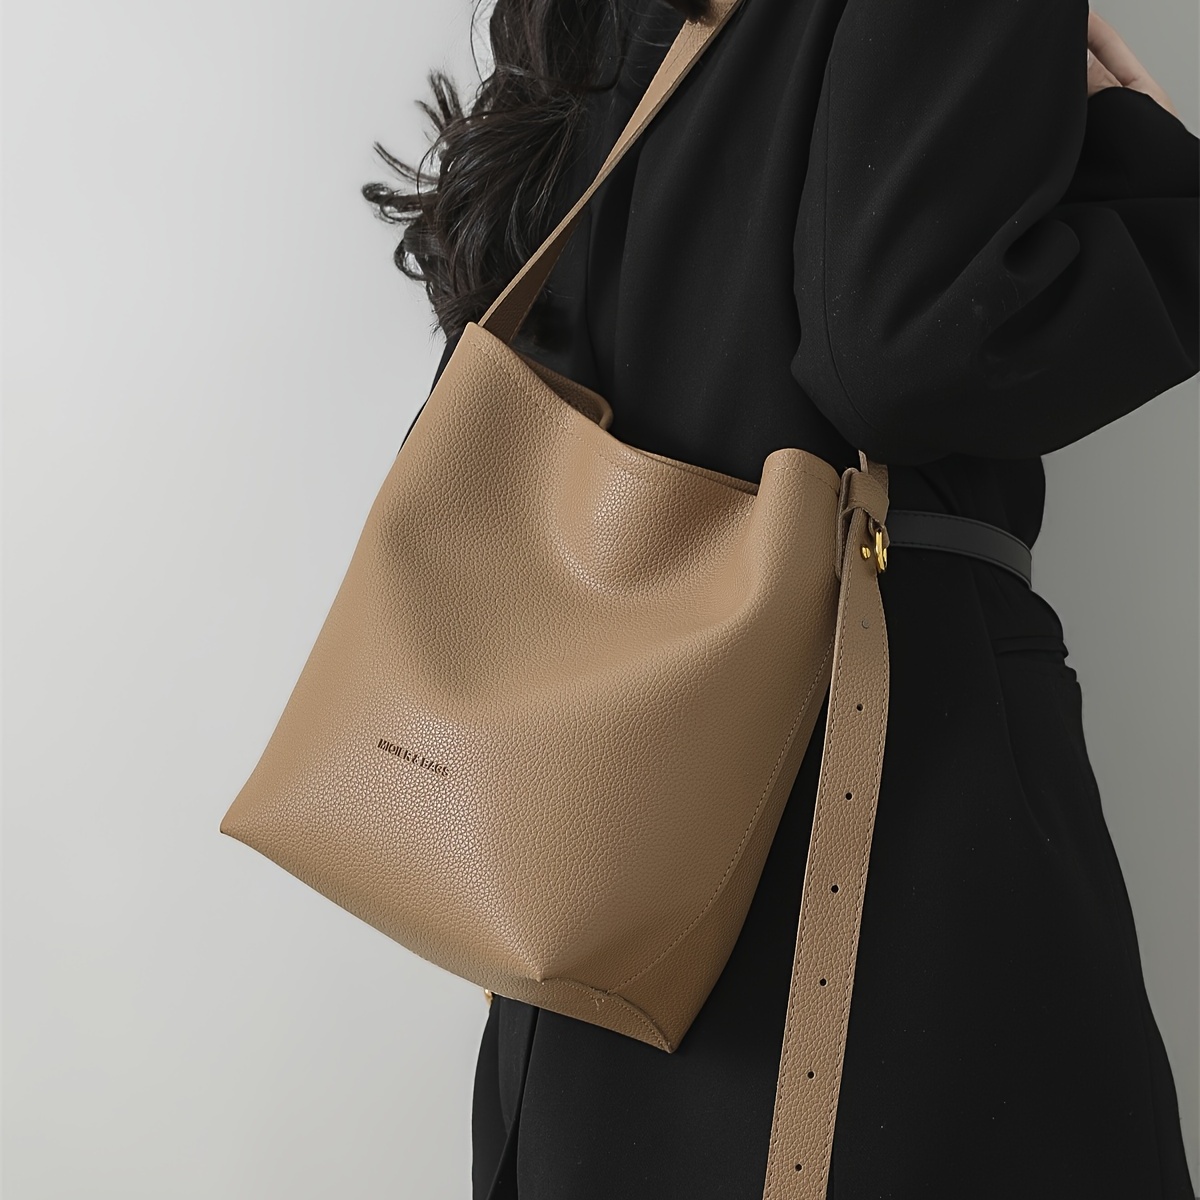 Litchi Embossed Hobo Bag Black Adjustable Strap For Daily